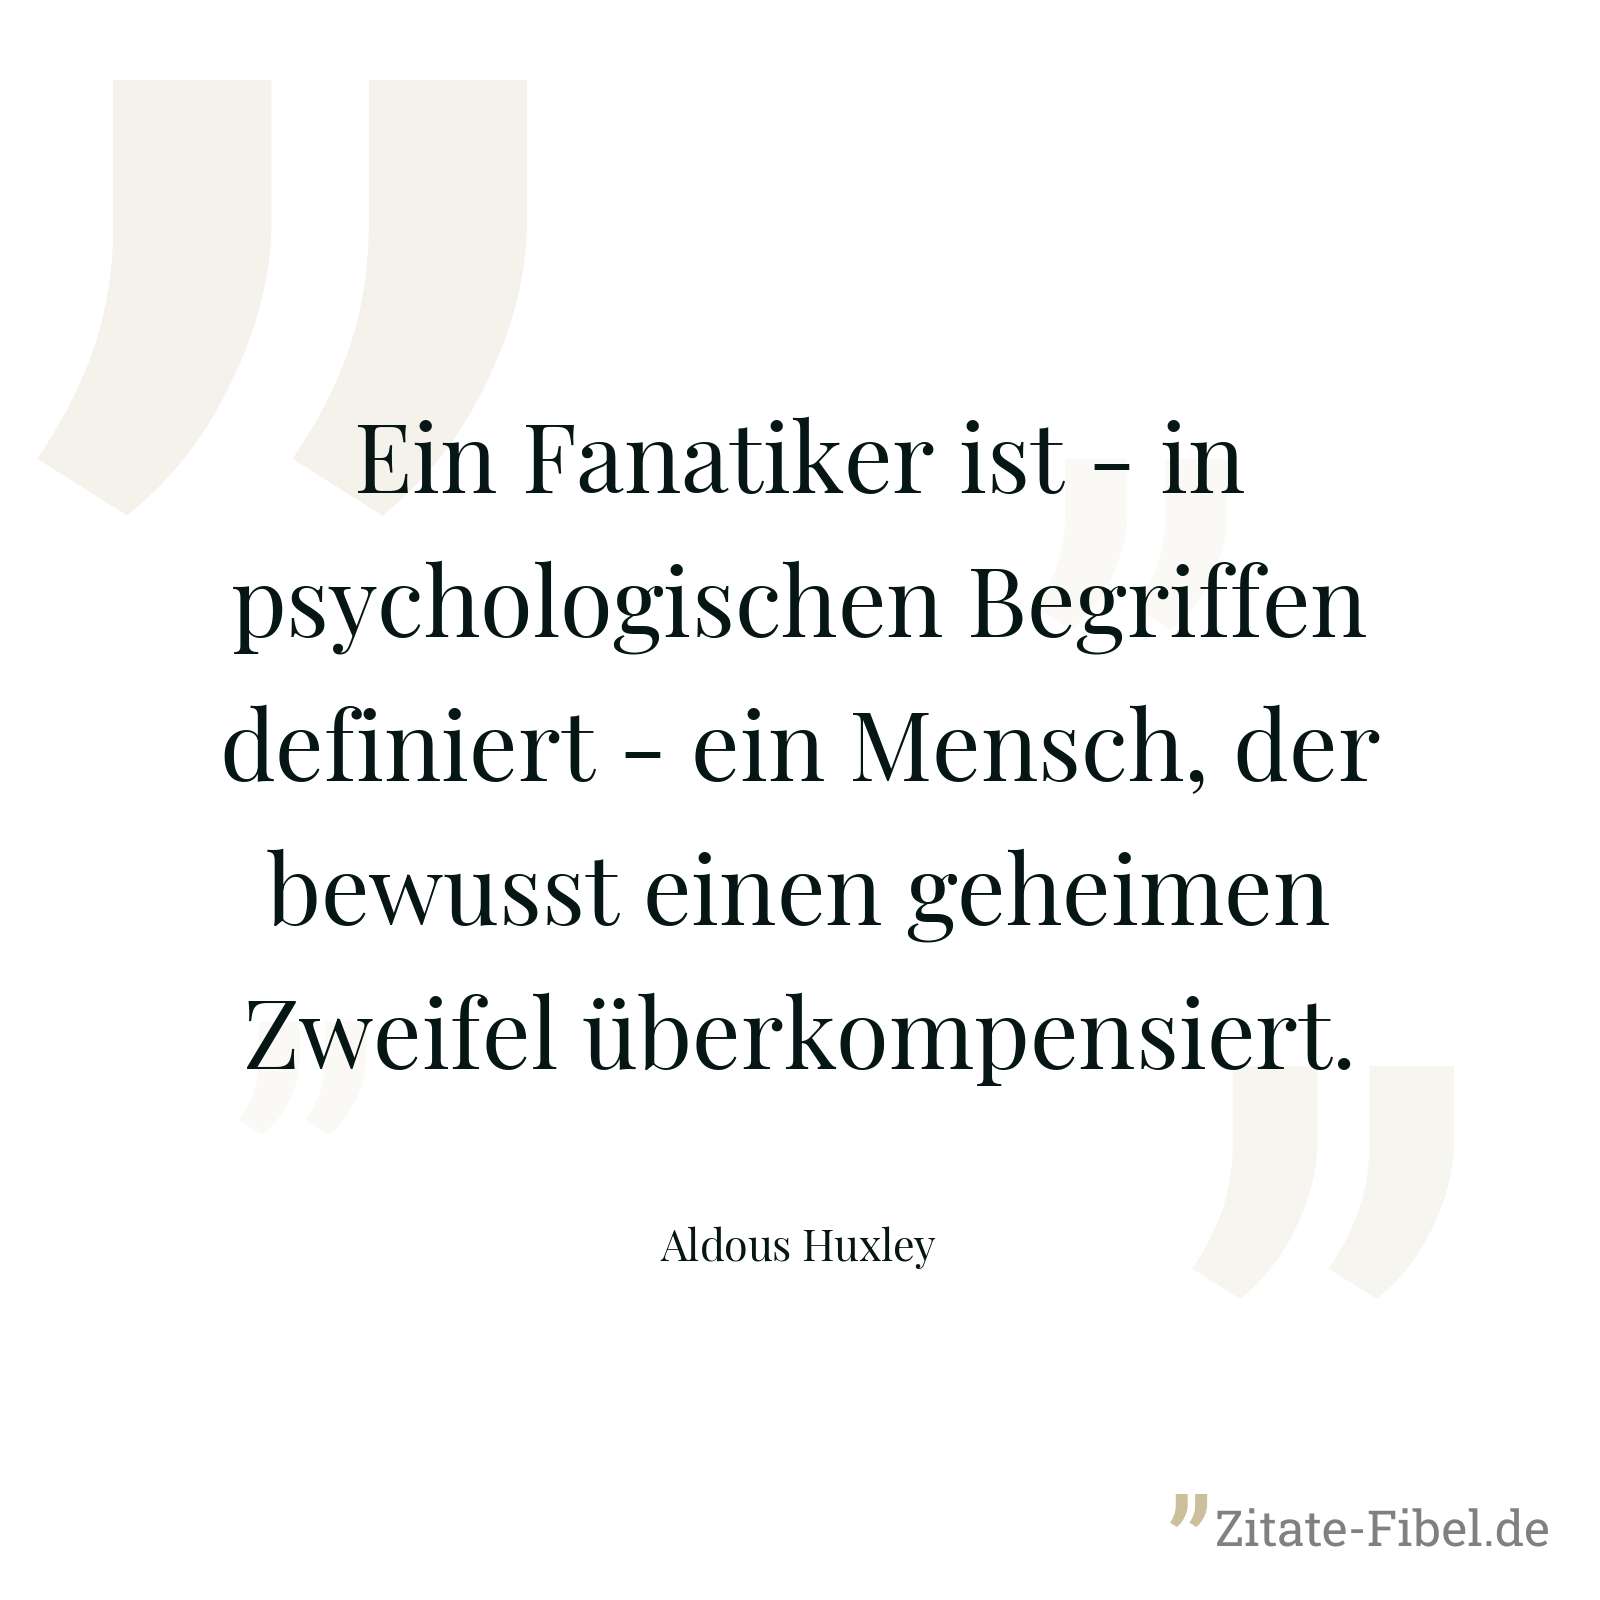 Ein Fanatiker ist - in psychologischen Begriffen definiert - ein Mensch, der bewusst einen geheimen Zweifel überkompensiert. - Aldous Huxley